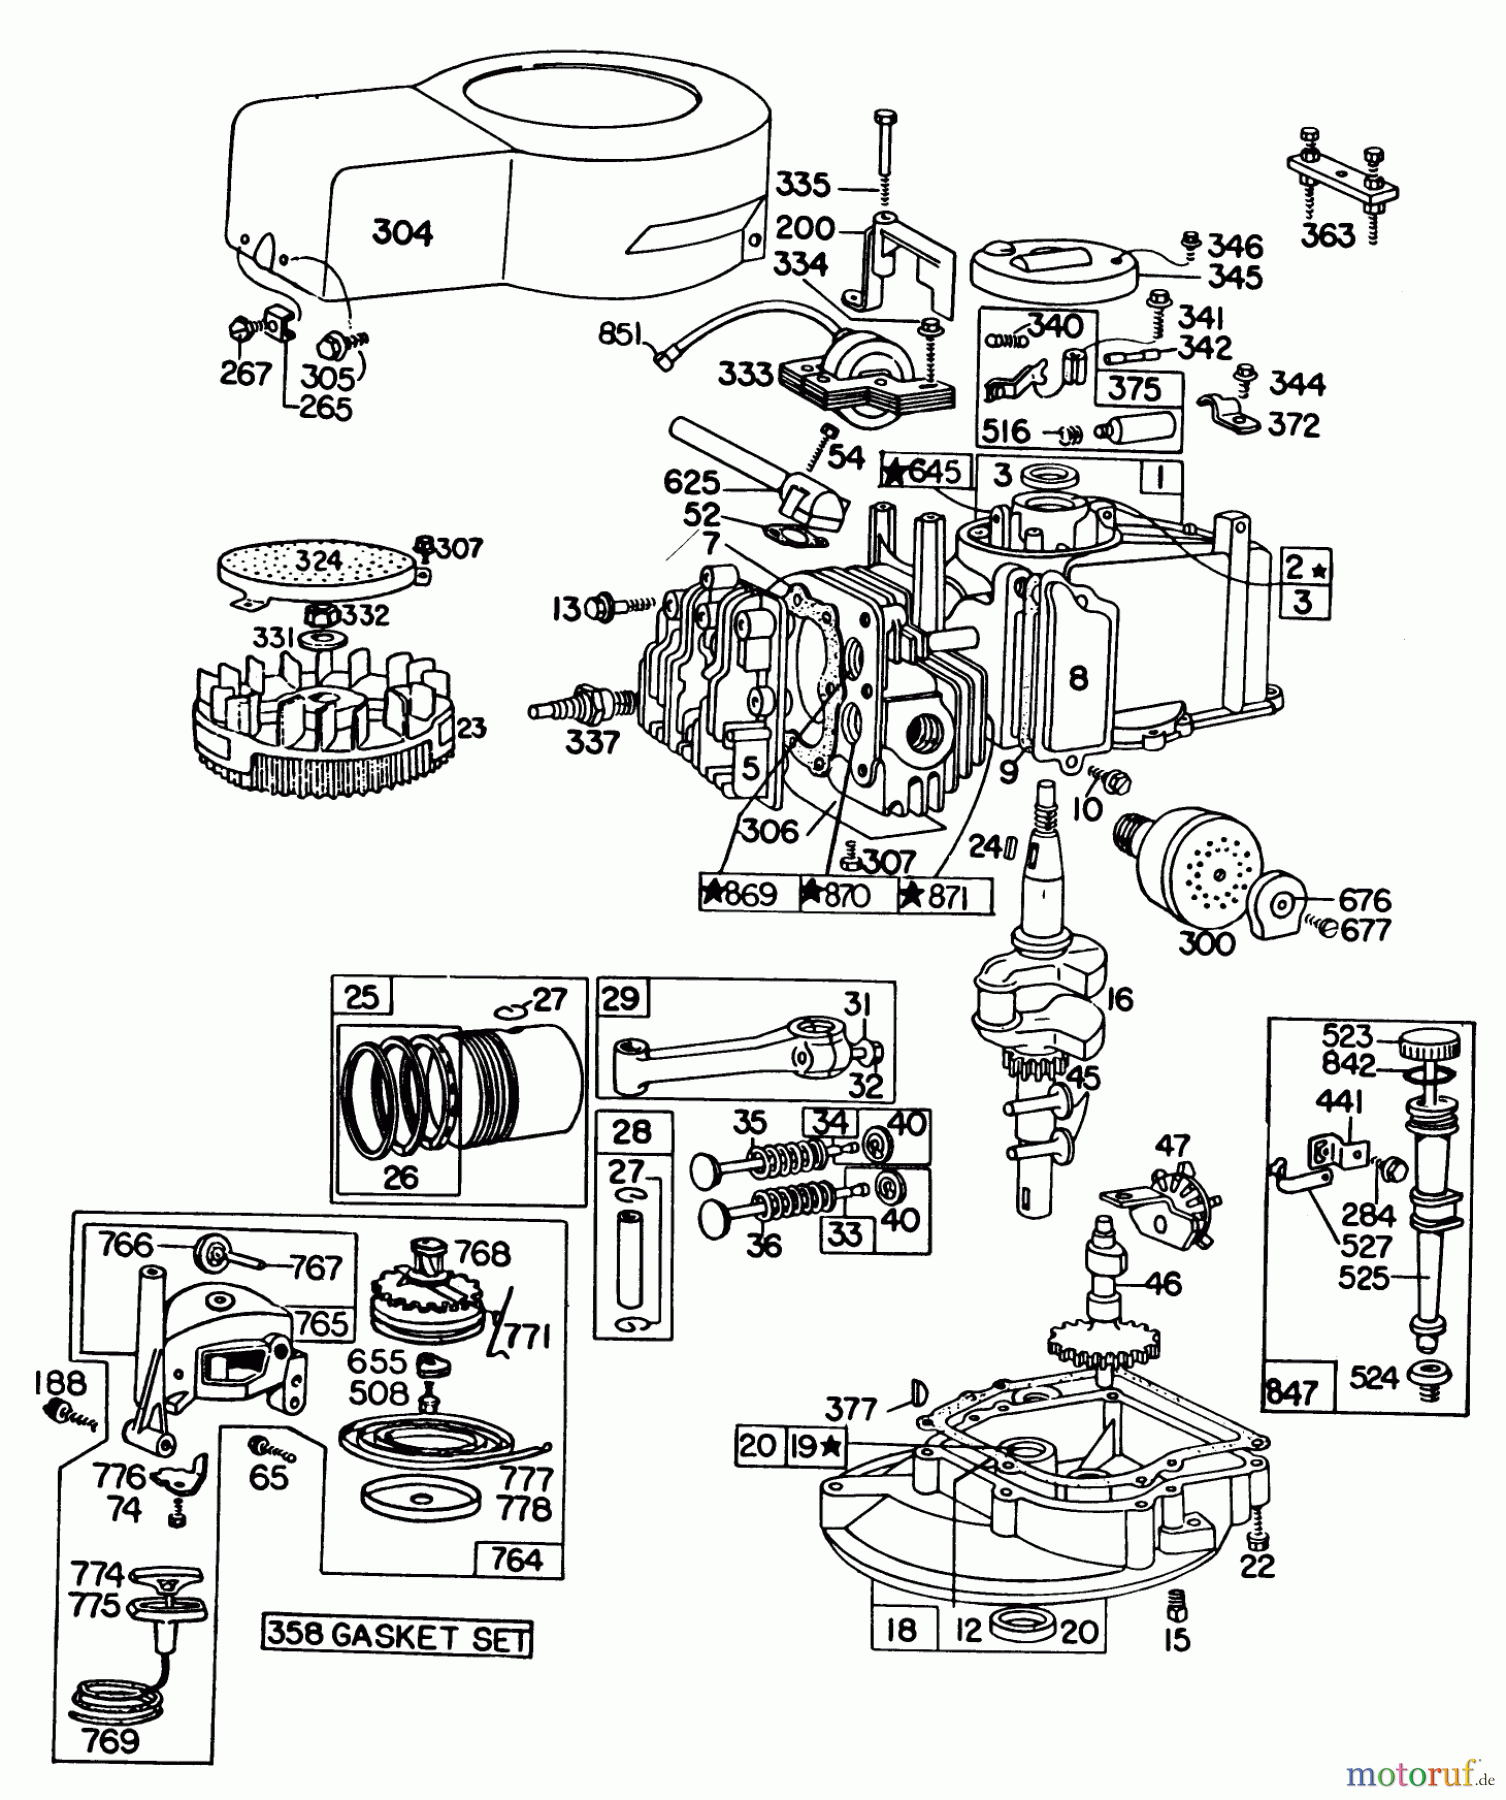  Toro Neu Mowers, Walk-Behind Seite 1 16370 - Toro Whirlwind II Lawnmower, 1979 (9000001-9999999) ENGINE BRIGGS & STRATTON MODEL 92908-1931-04 FOR 21